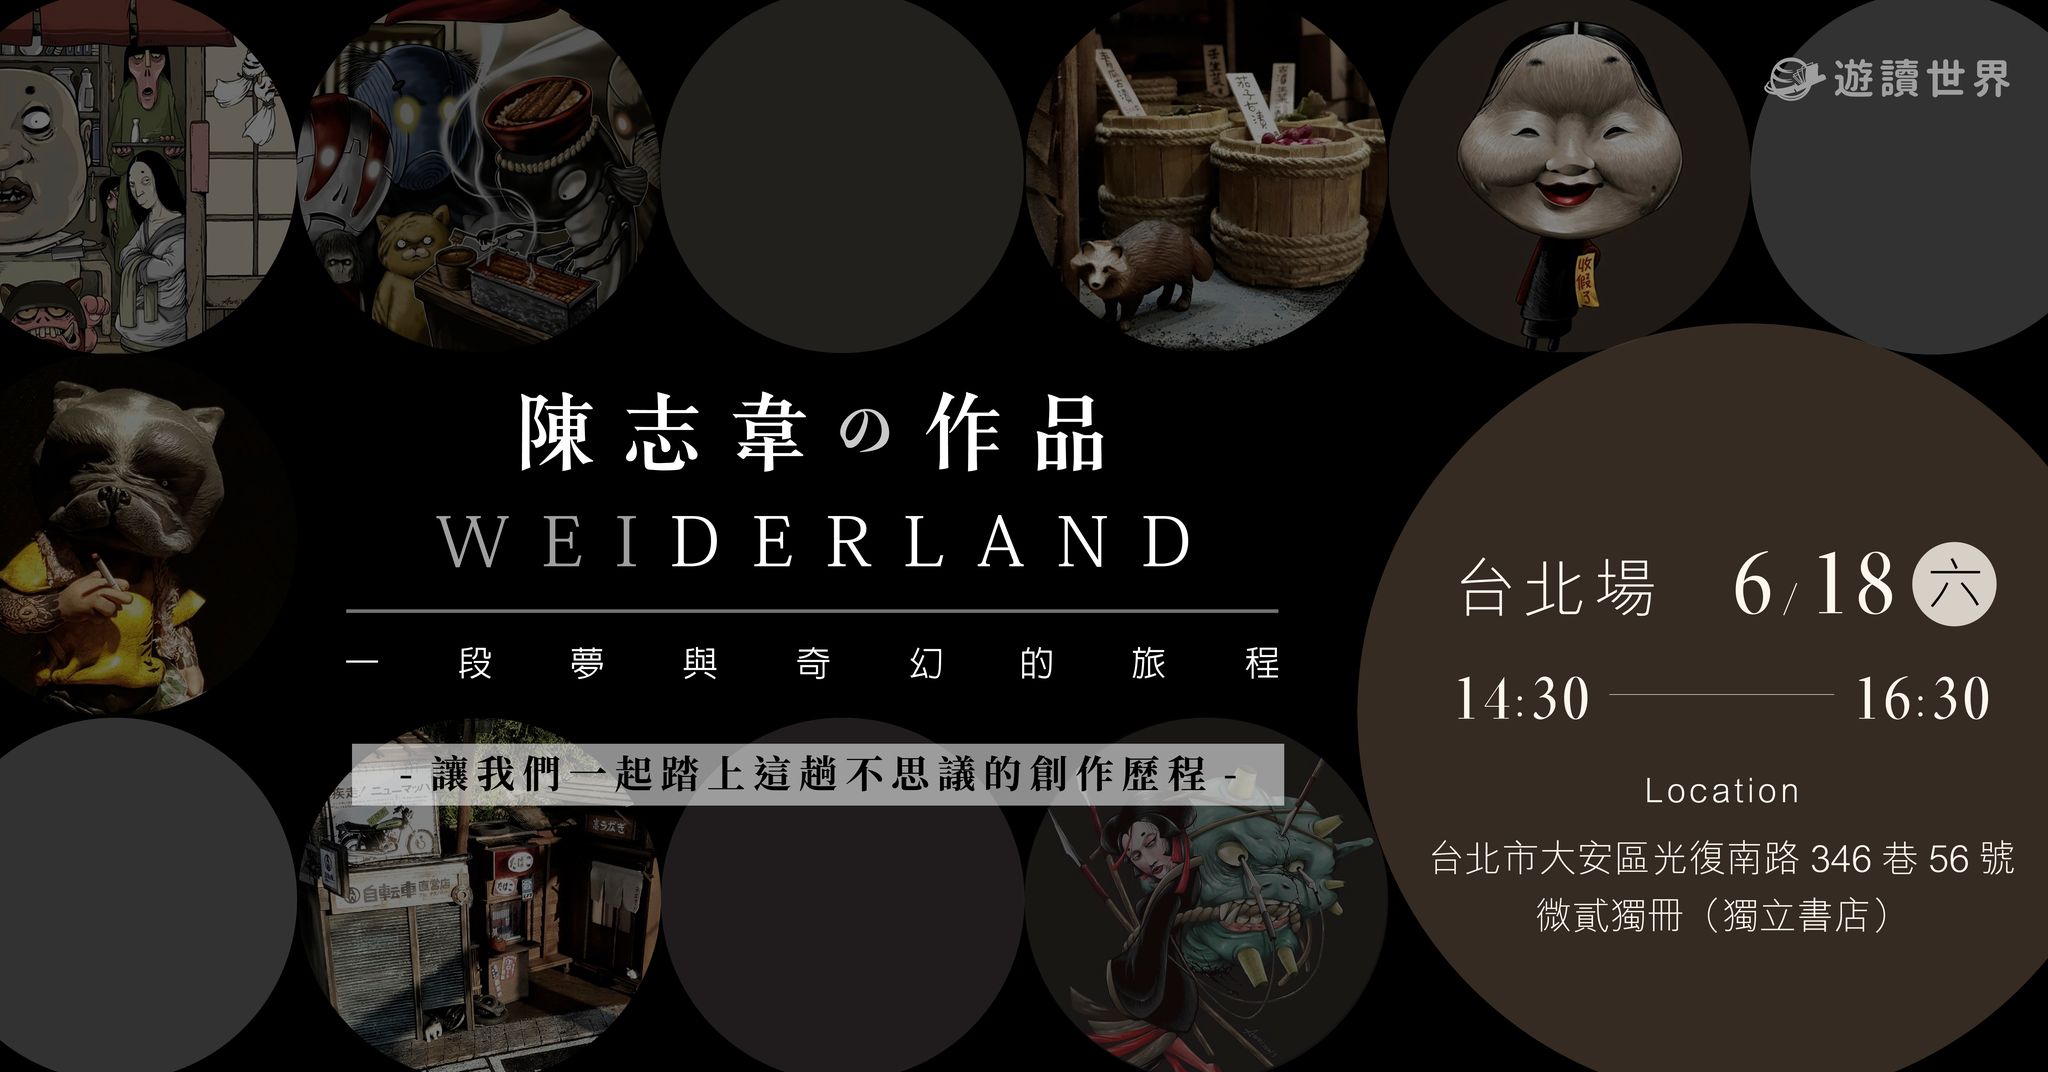 Weiderland：一段夢與奇幻的旅程 | 全台巡迴創作分享會